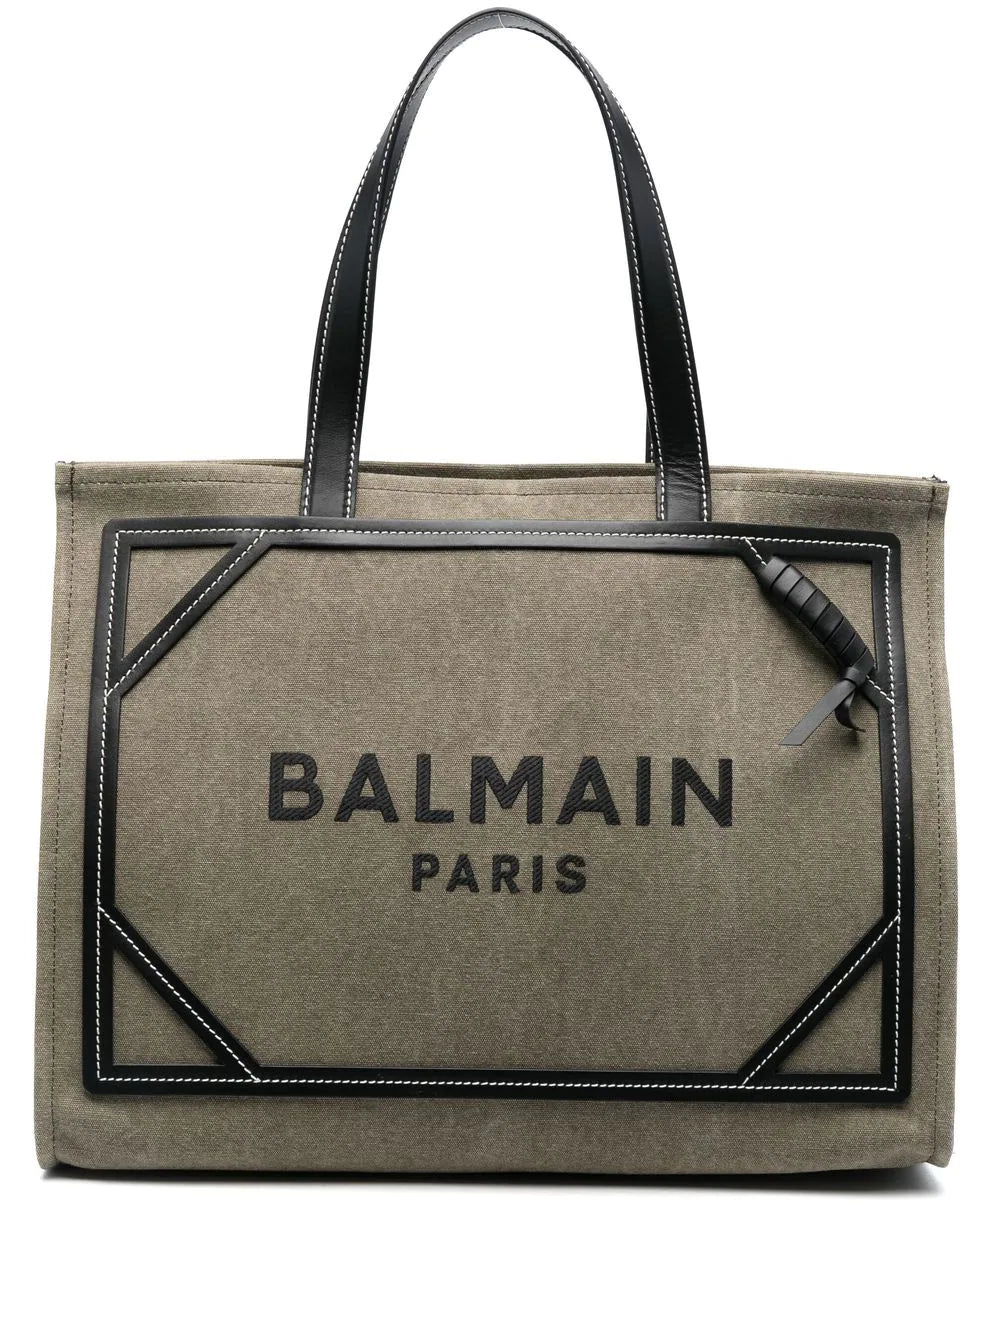 Balmain B-Army canvas tote bag